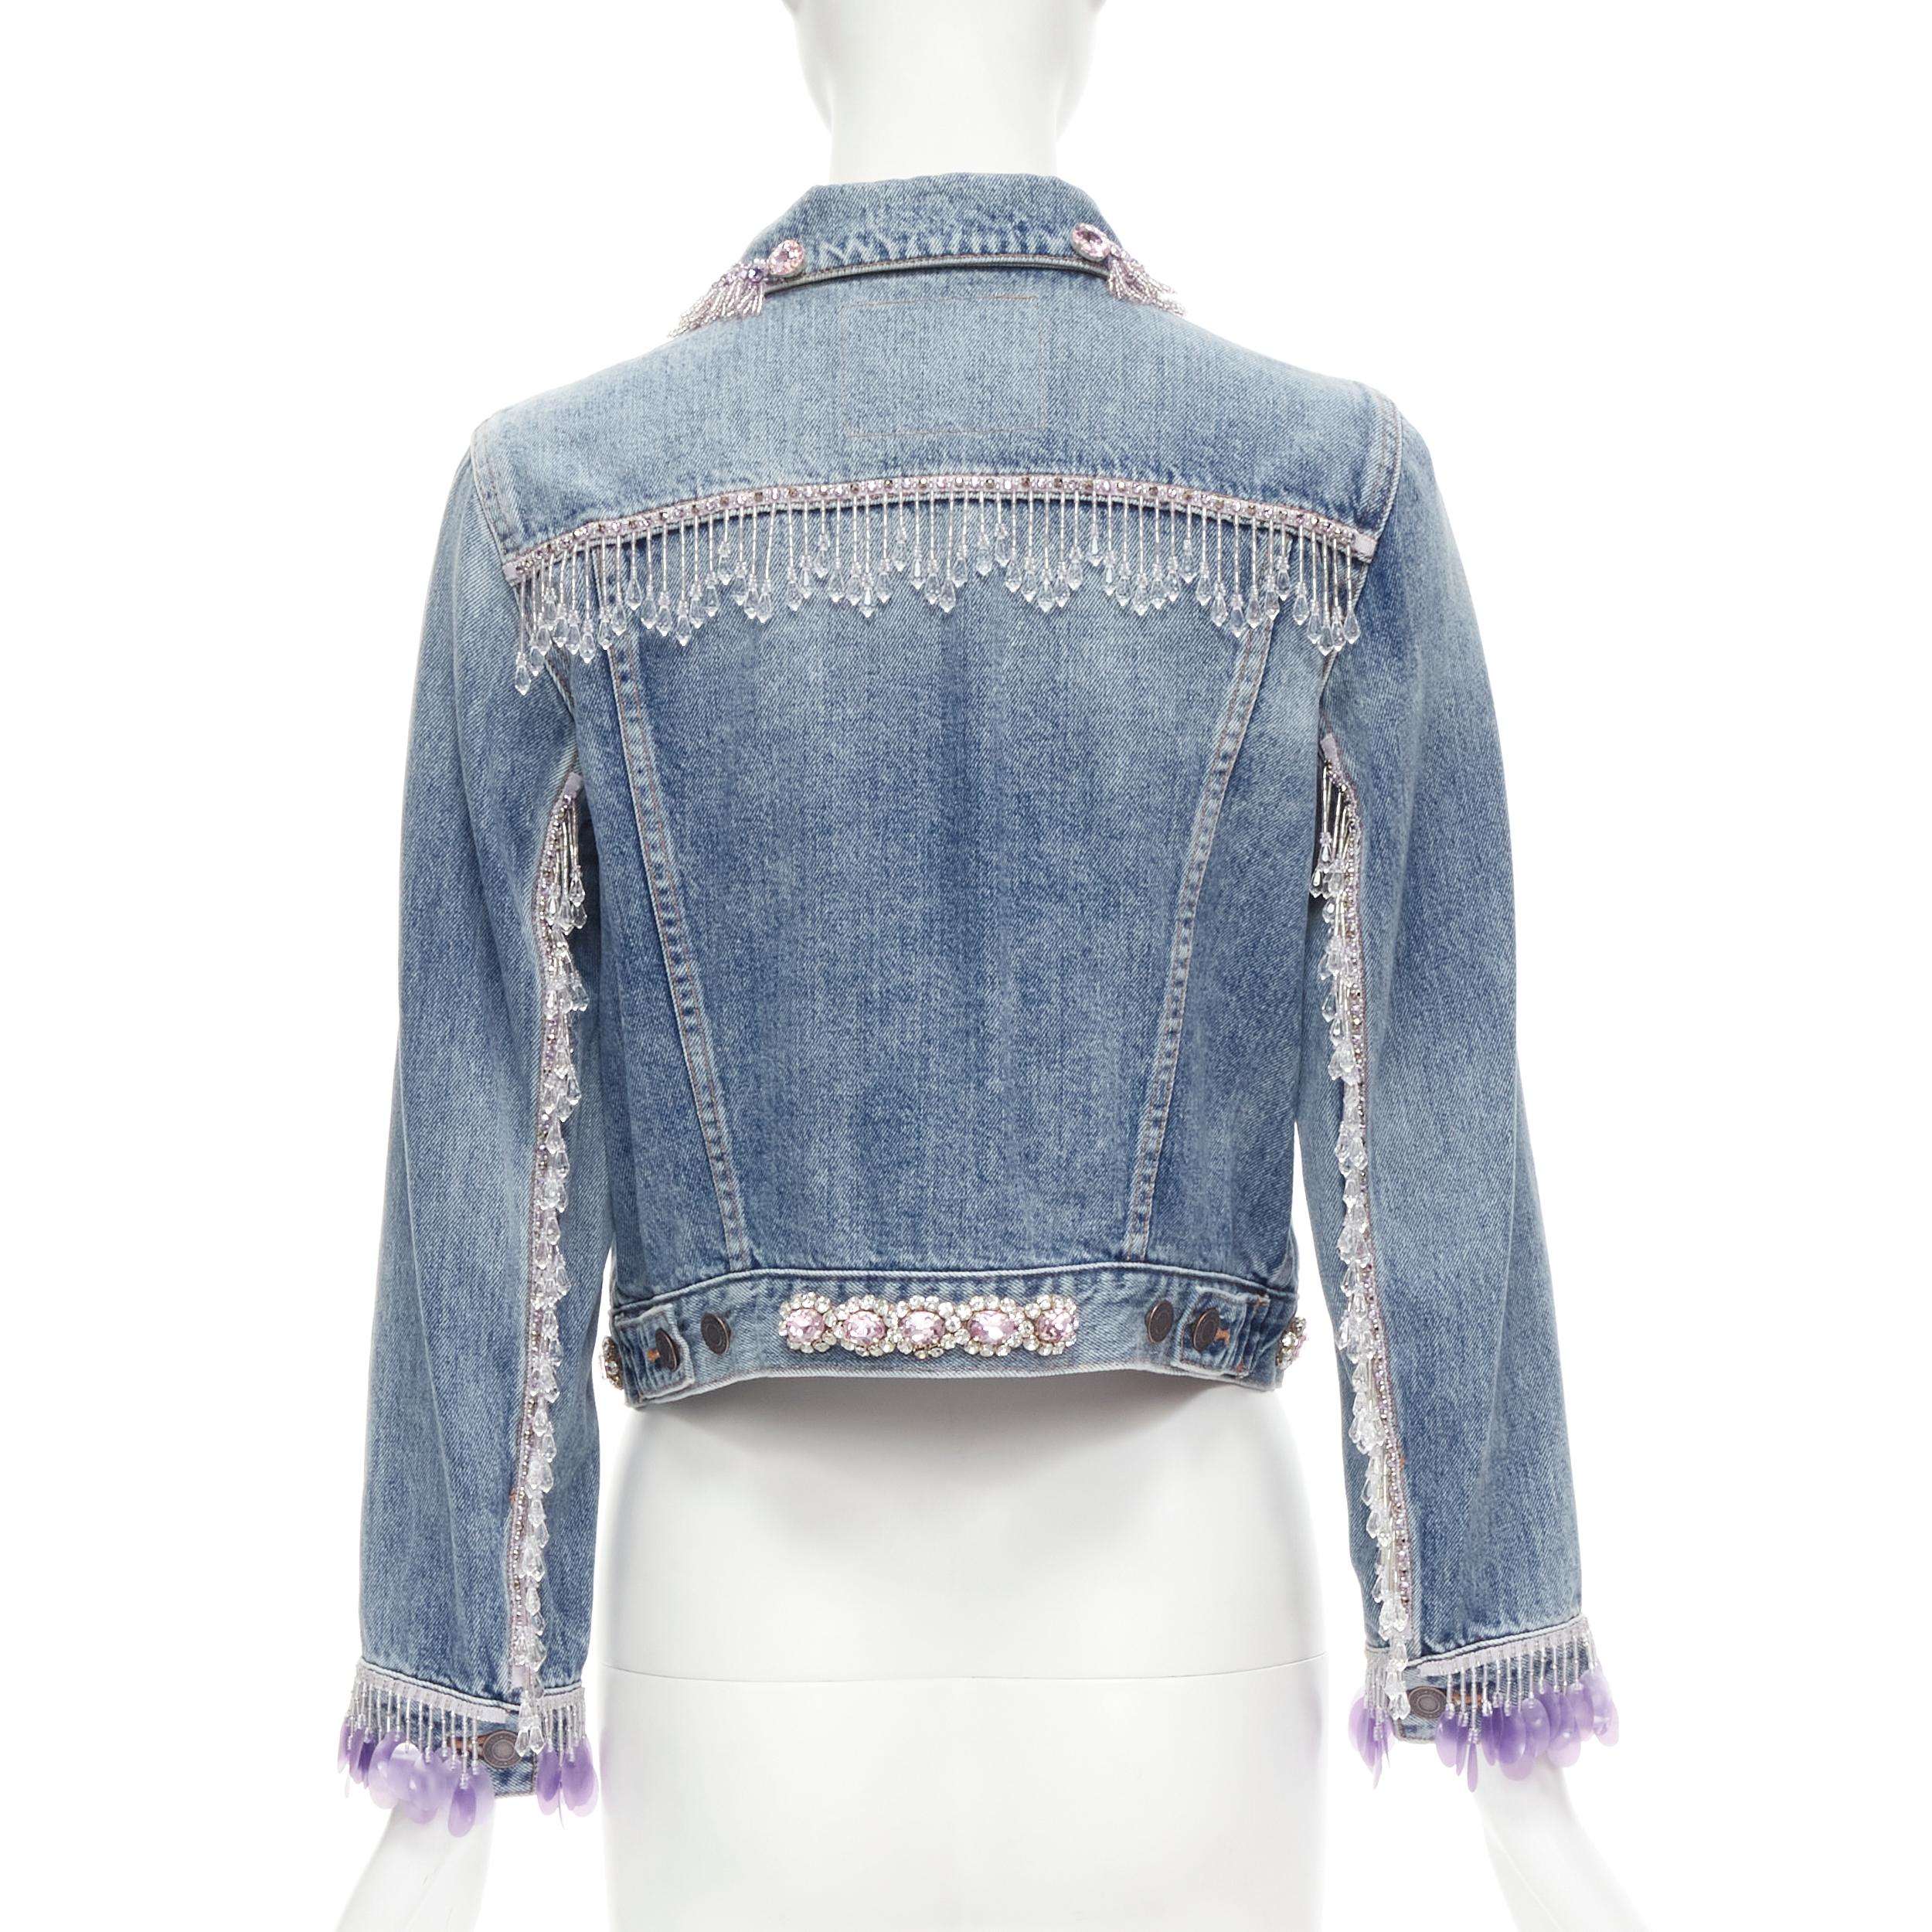 embellished jean jacket